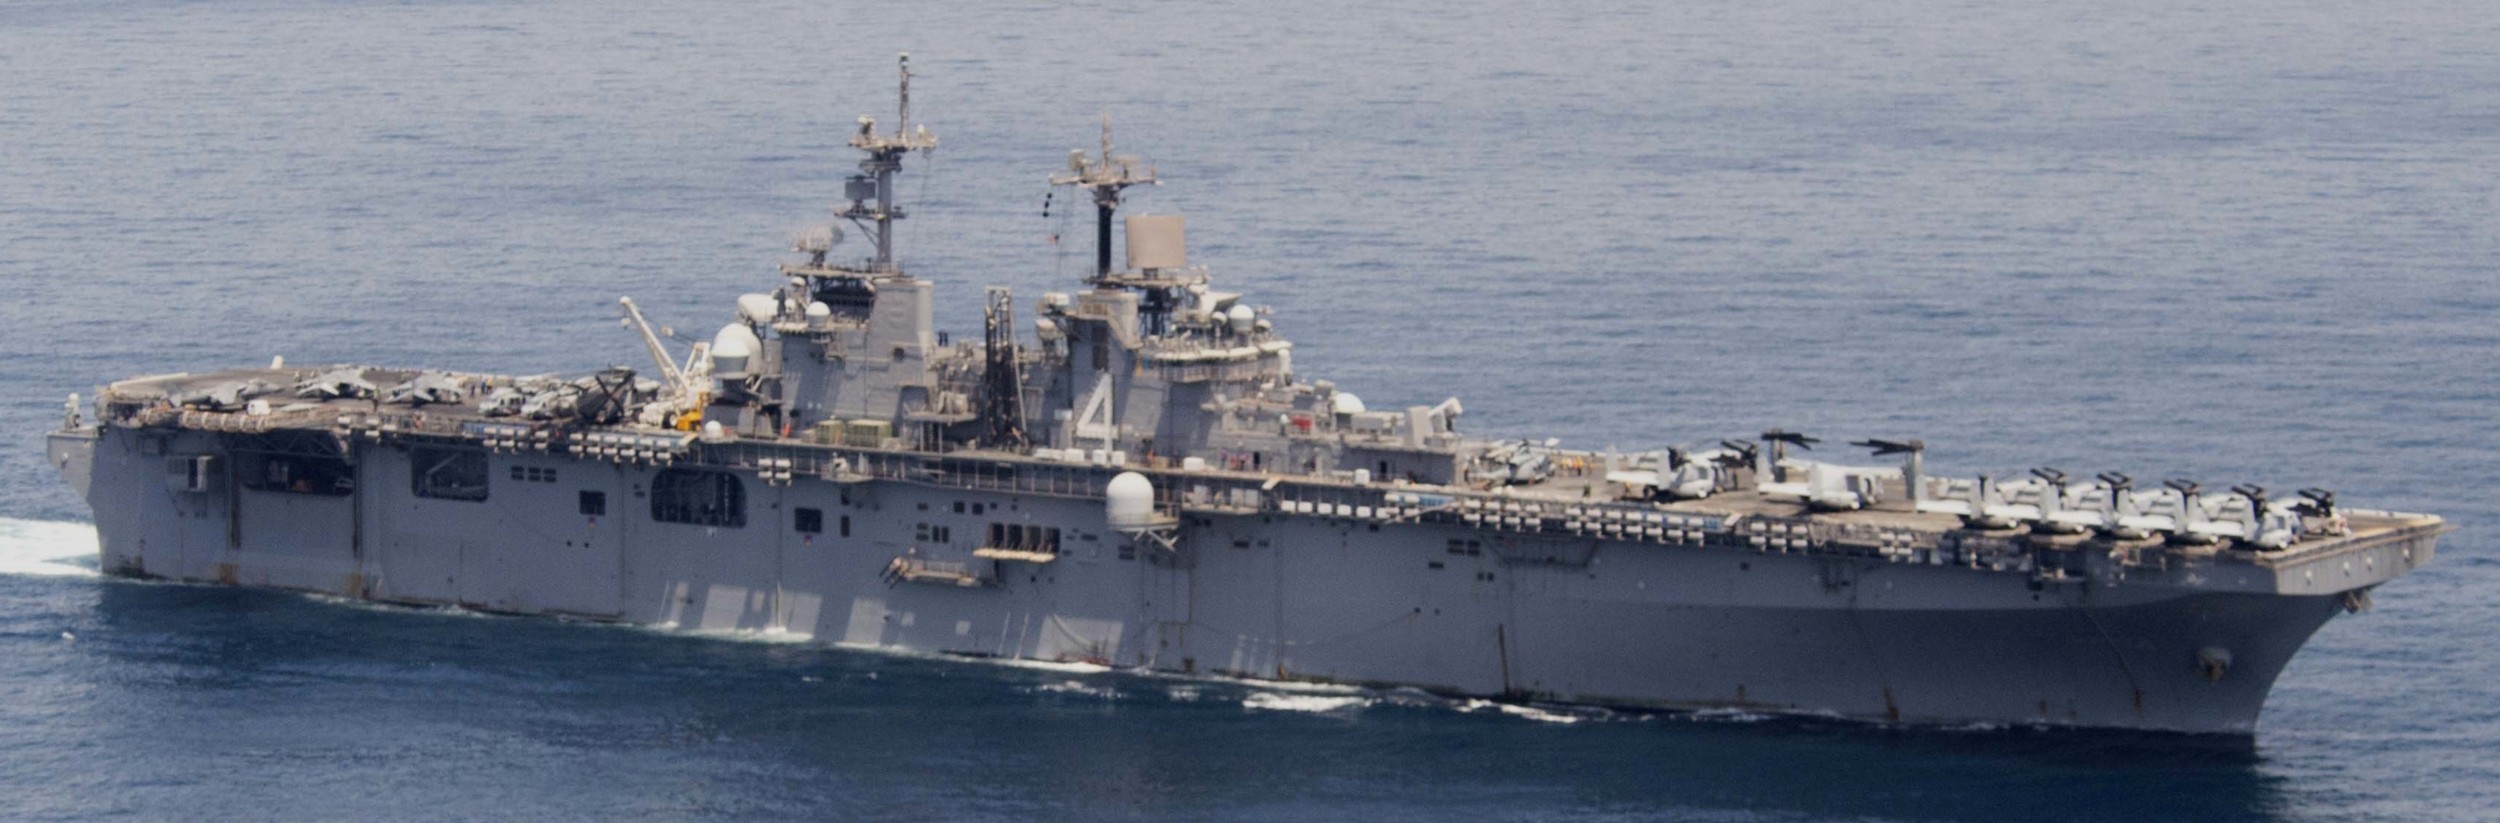 lhd-4 uss boxer wasp class amphibious assault ship dock landing us navy marines vmm-166 114